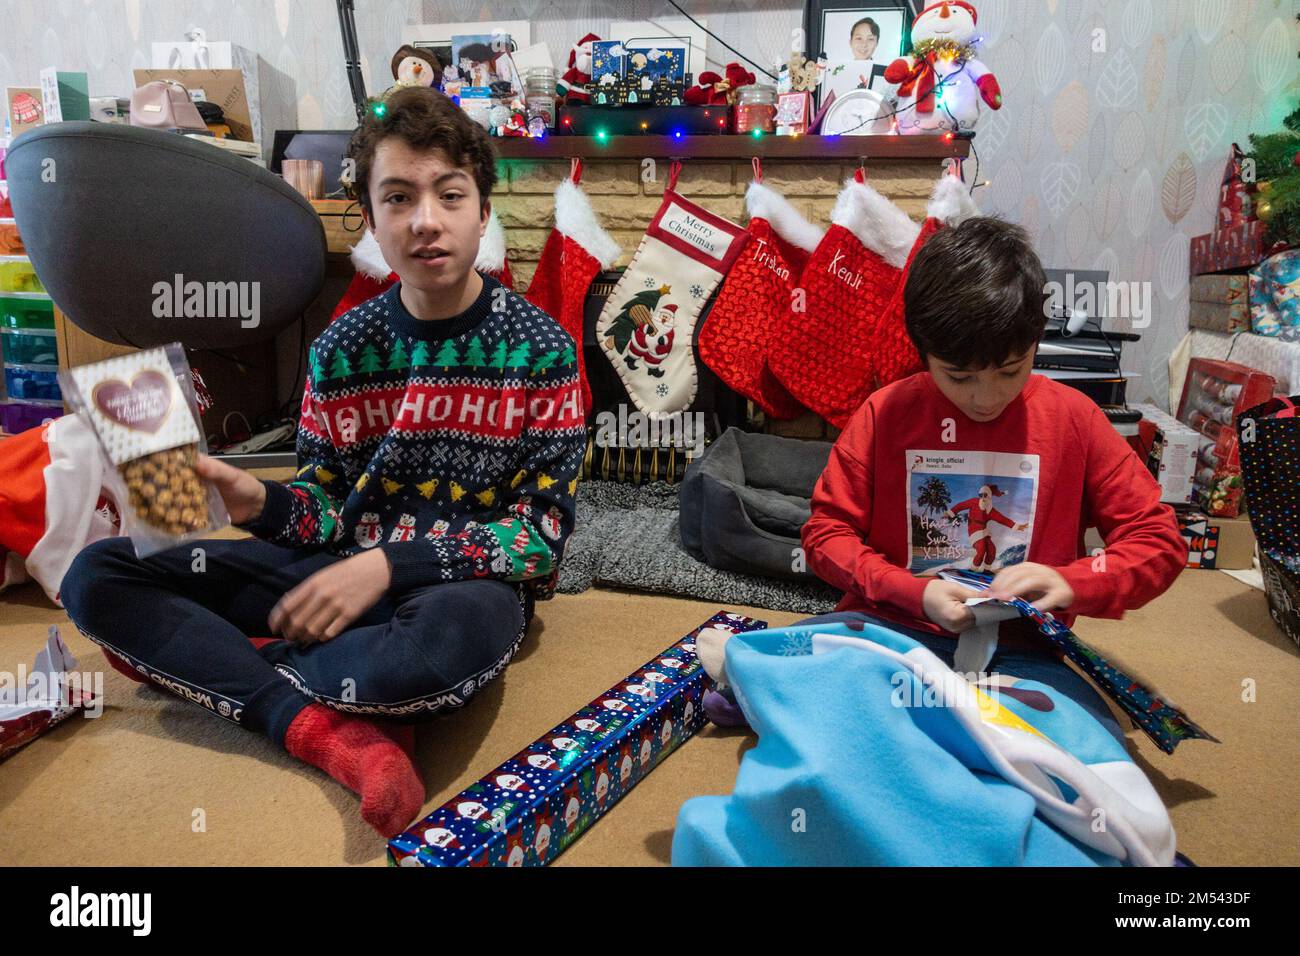 Die Brüder saßen auf dem Boden und öffneten Weihnachtsgeschenke am ersten Weihnachtsfeiertag Stockfoto